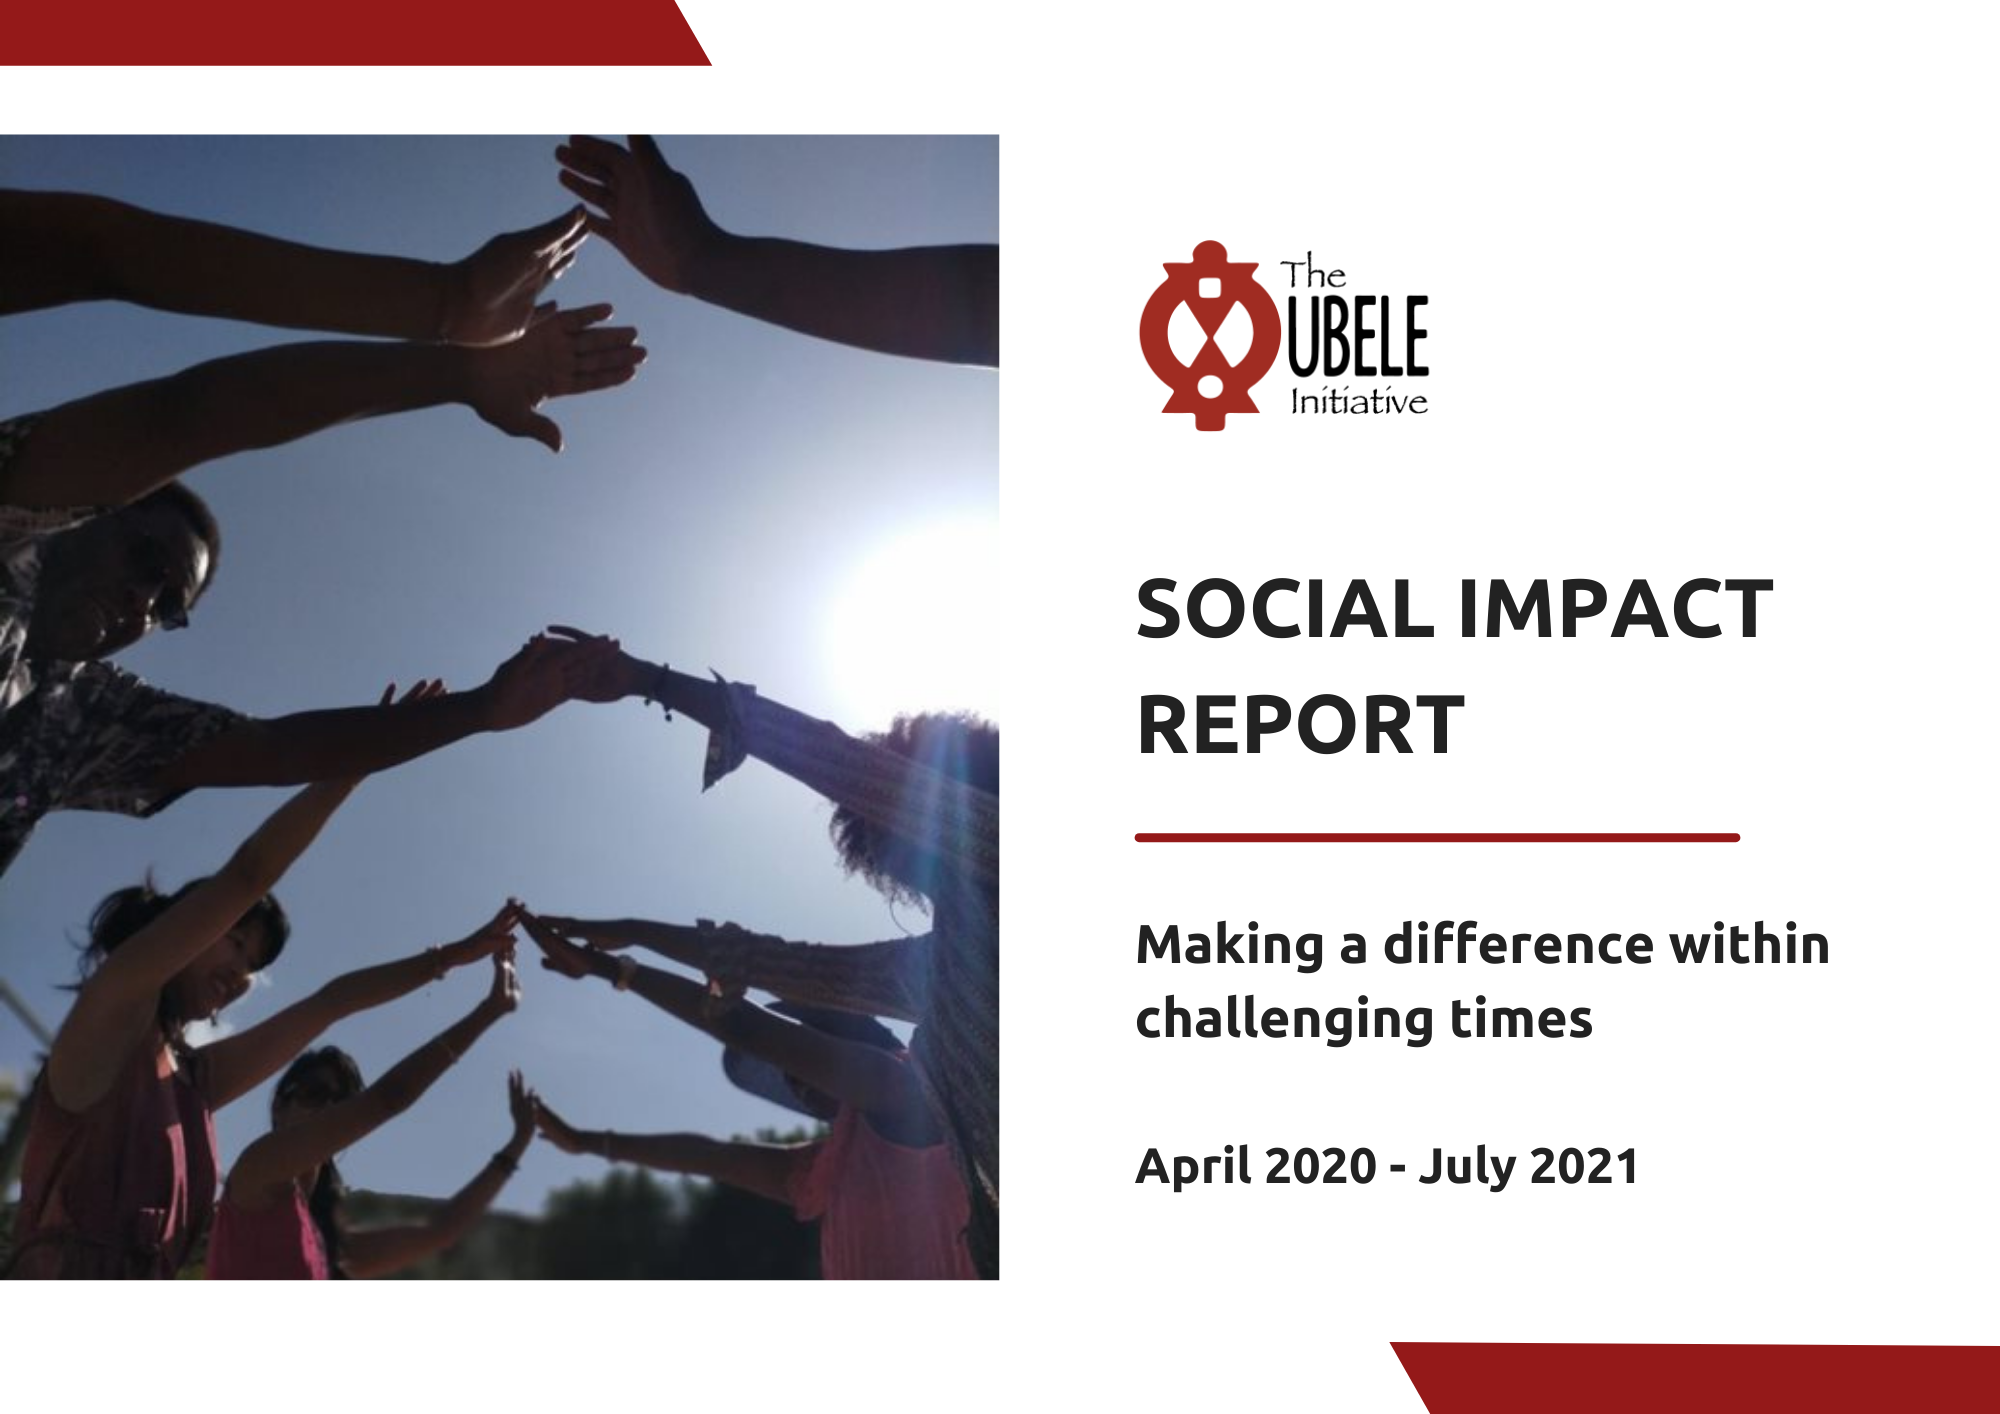 Ubele Social Impact Report.png